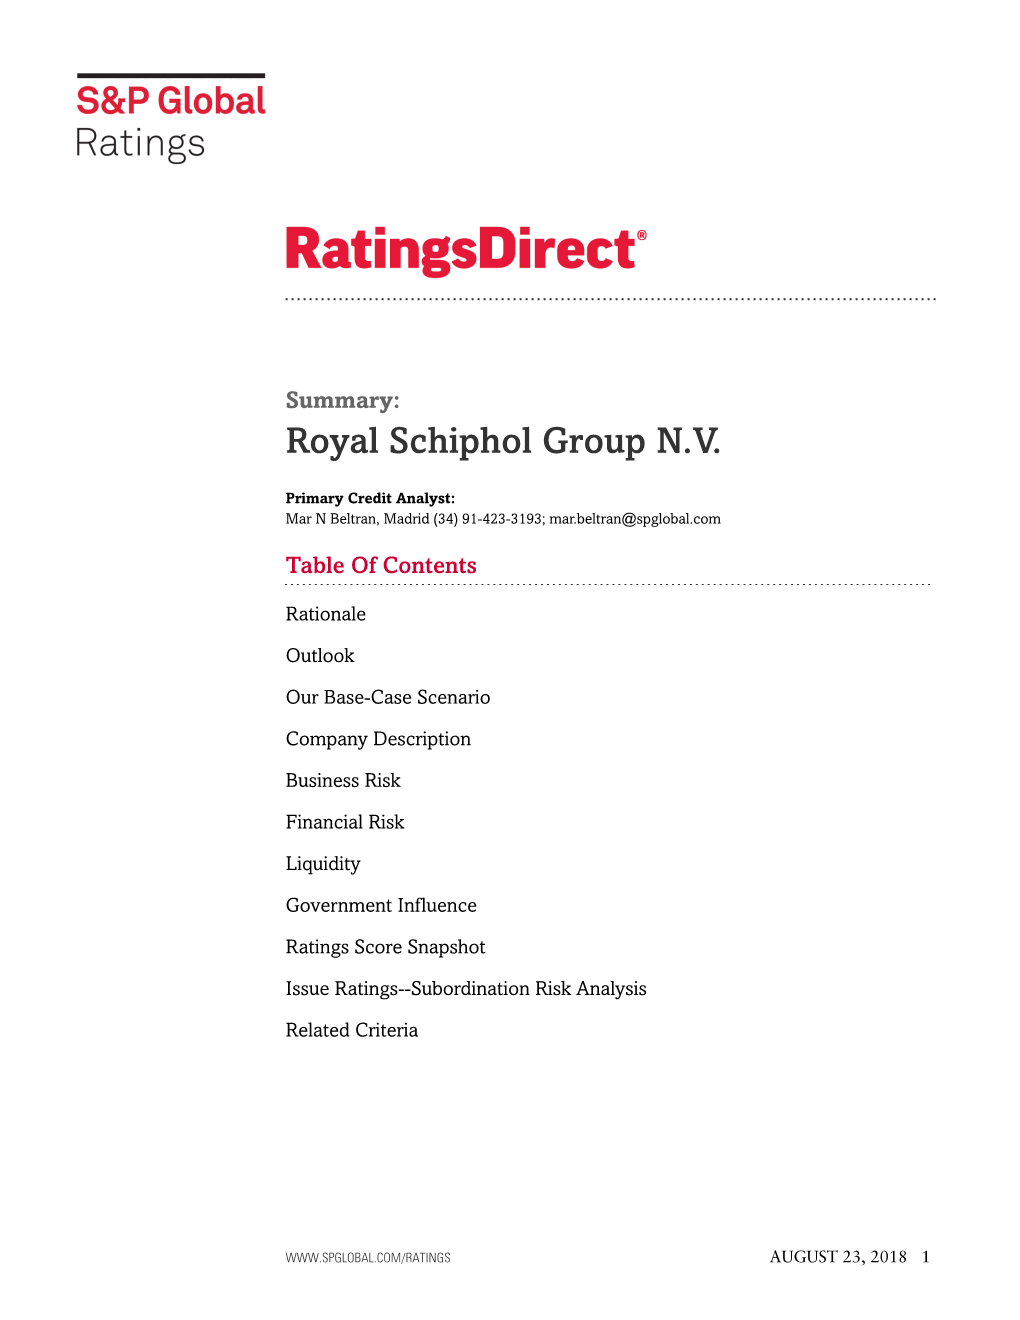 Royal Schiphol Group N.V